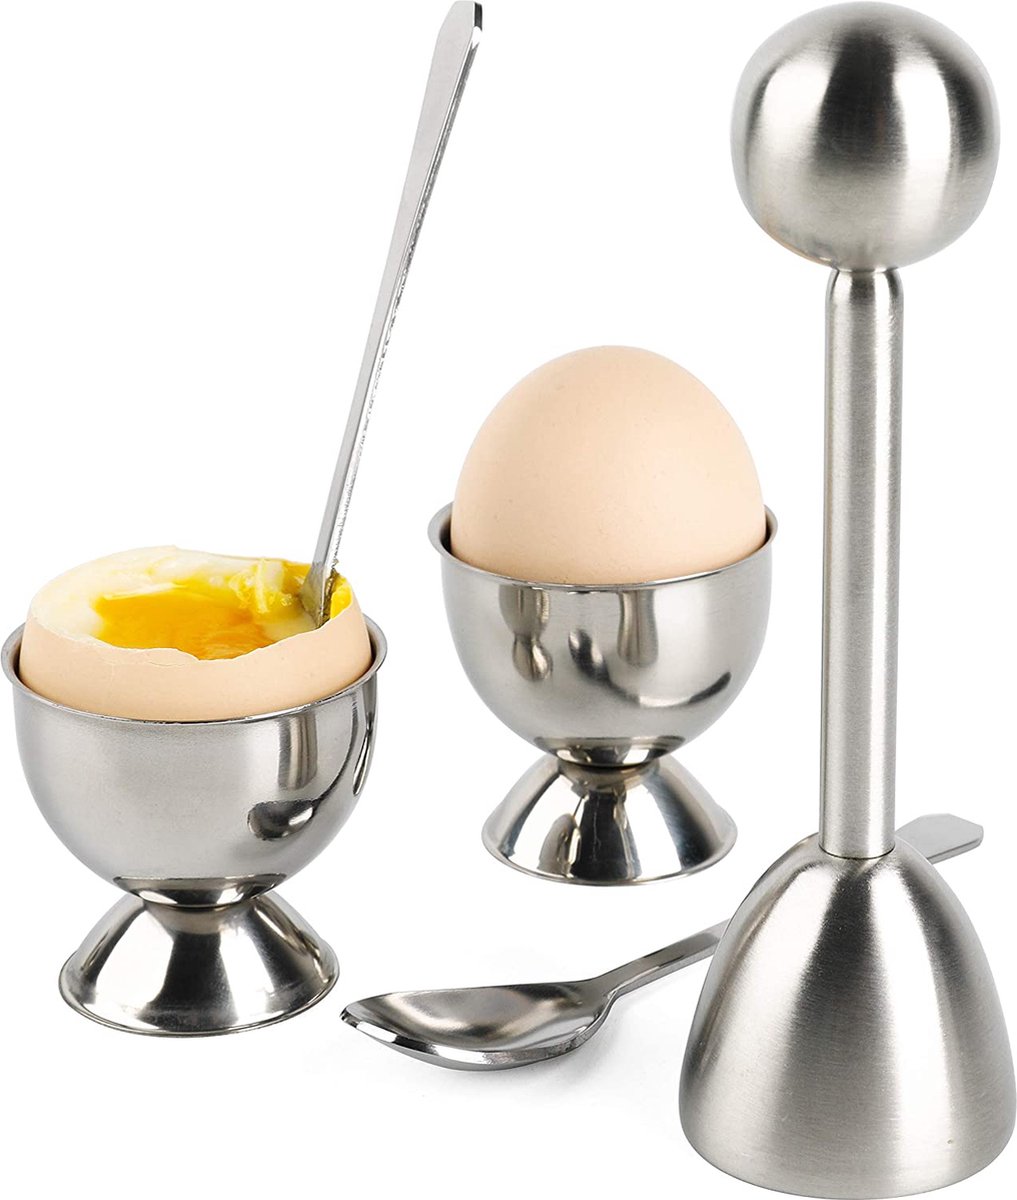 Ouvre-coquille d'œuf à la coque, outil de cuisine créatif